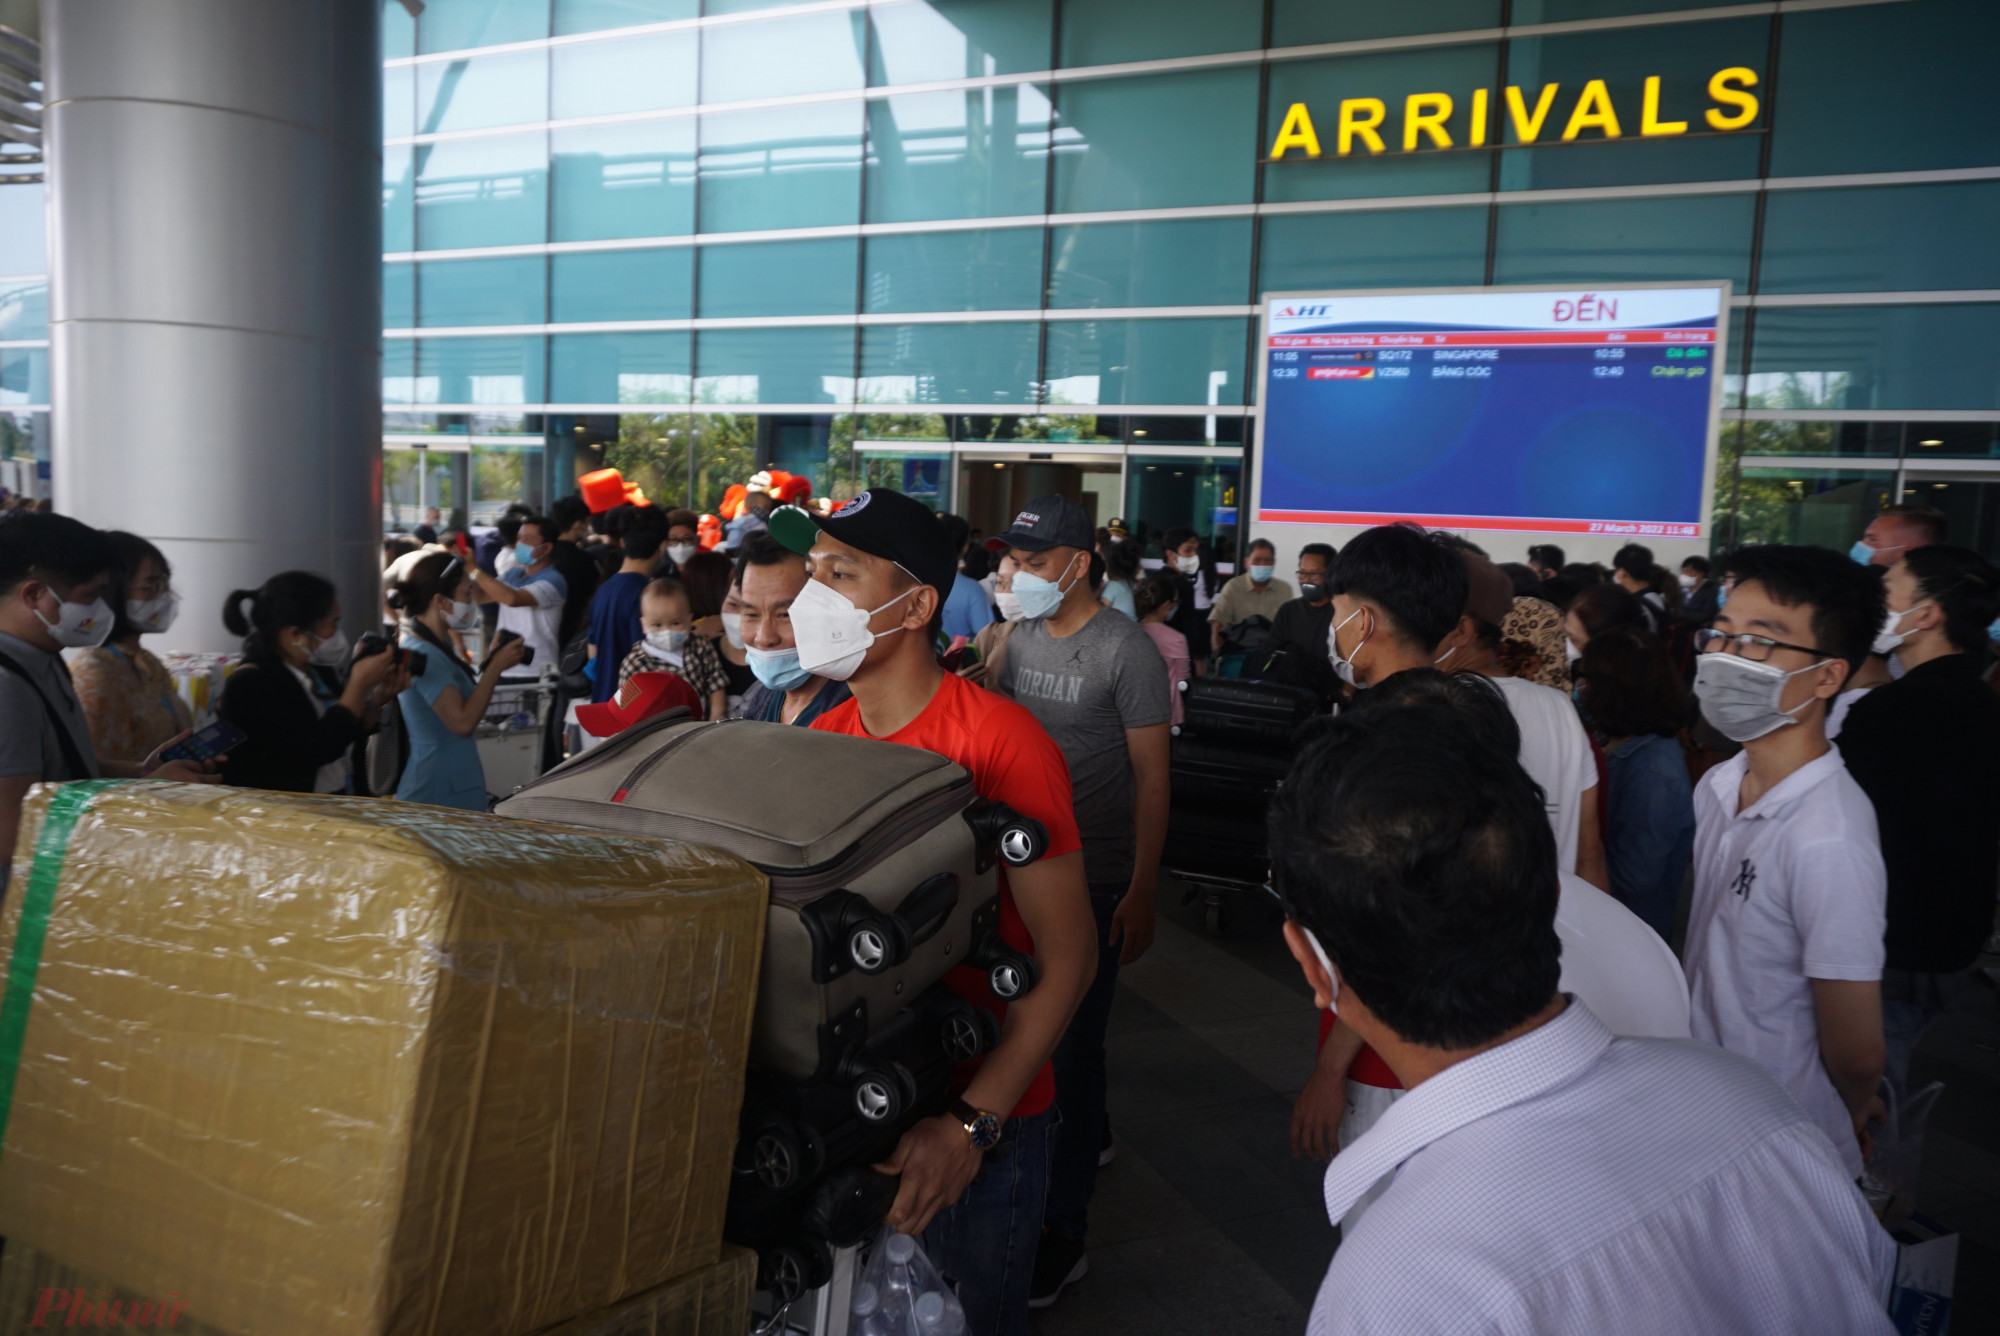 Ghi nhận vào khoảng 11 giờ, chuyến bay SQ172 với gần 160 hành khách từ Singapore đã hạ cánh Đà Nẵng. Nhiều hành khách vô cùng bất ngờ và xúc động với màn tiếp đón đặc biệt từ Nhà ga hành khách quốc tế Đà Nẵng. 